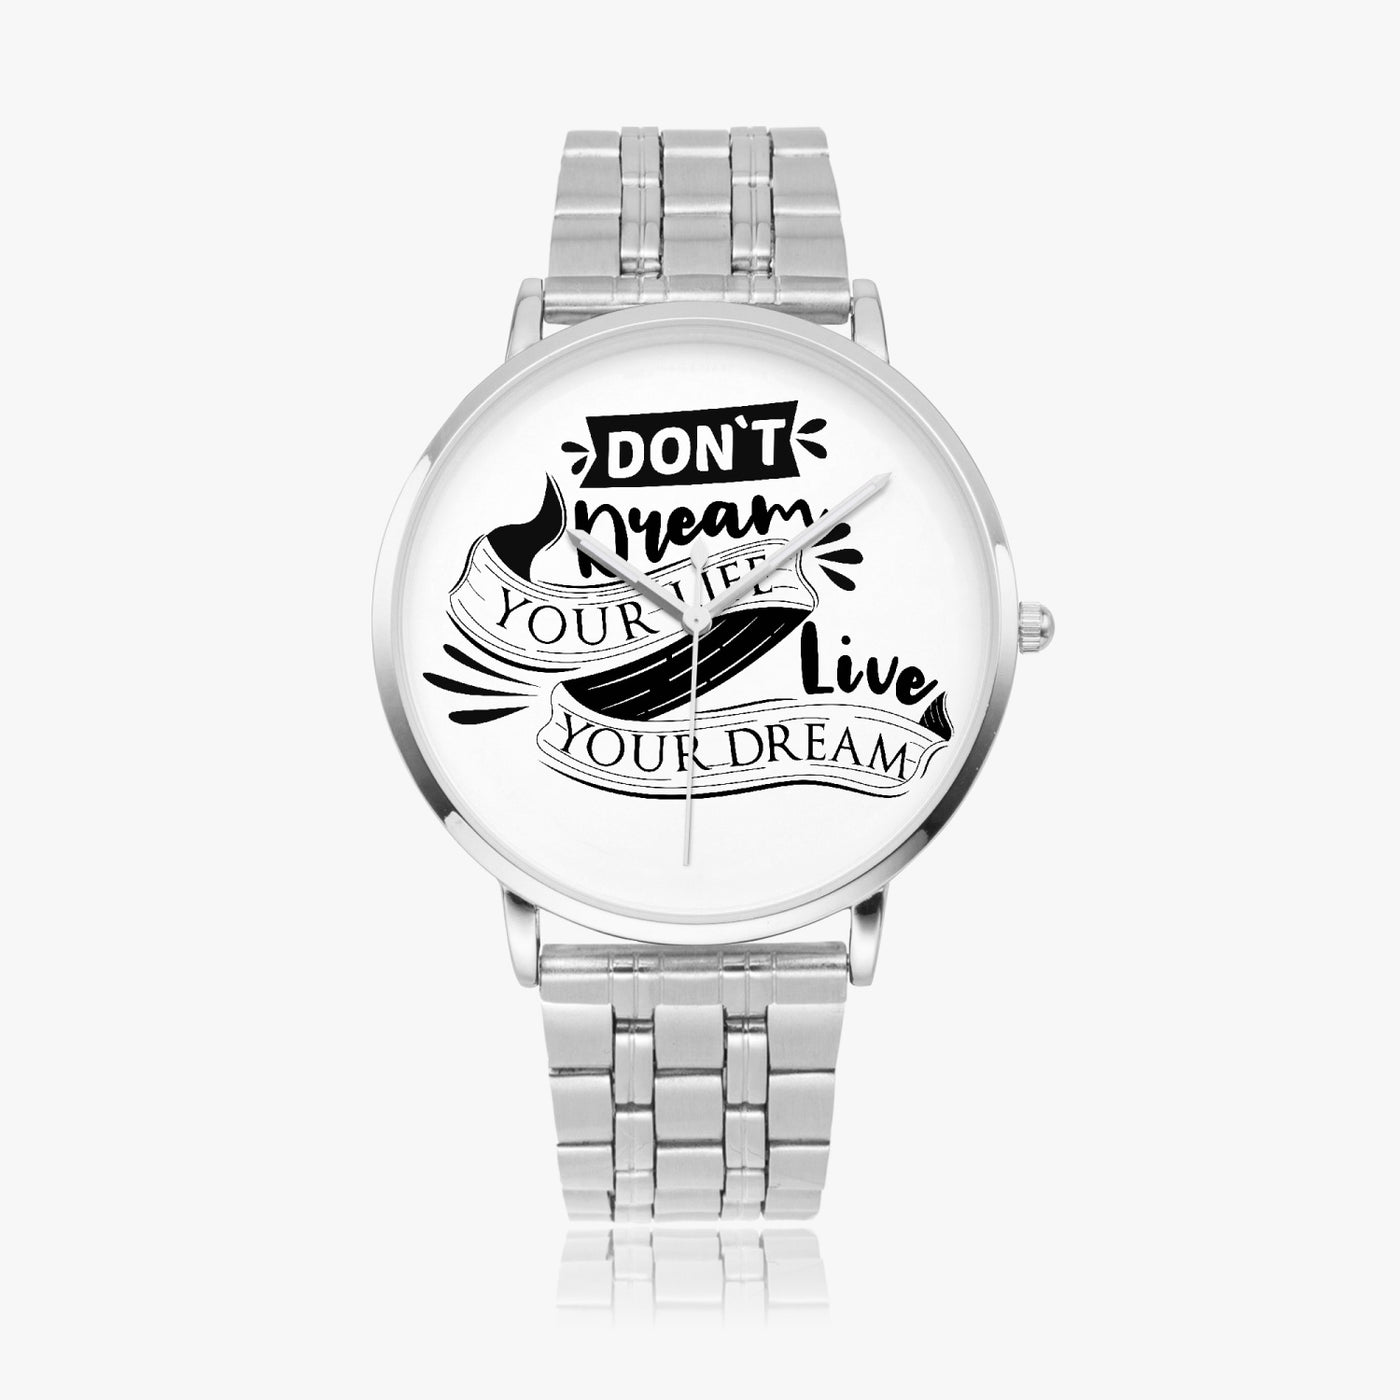 Live Your Dream - Instafamous Steel Strap Quartz watch